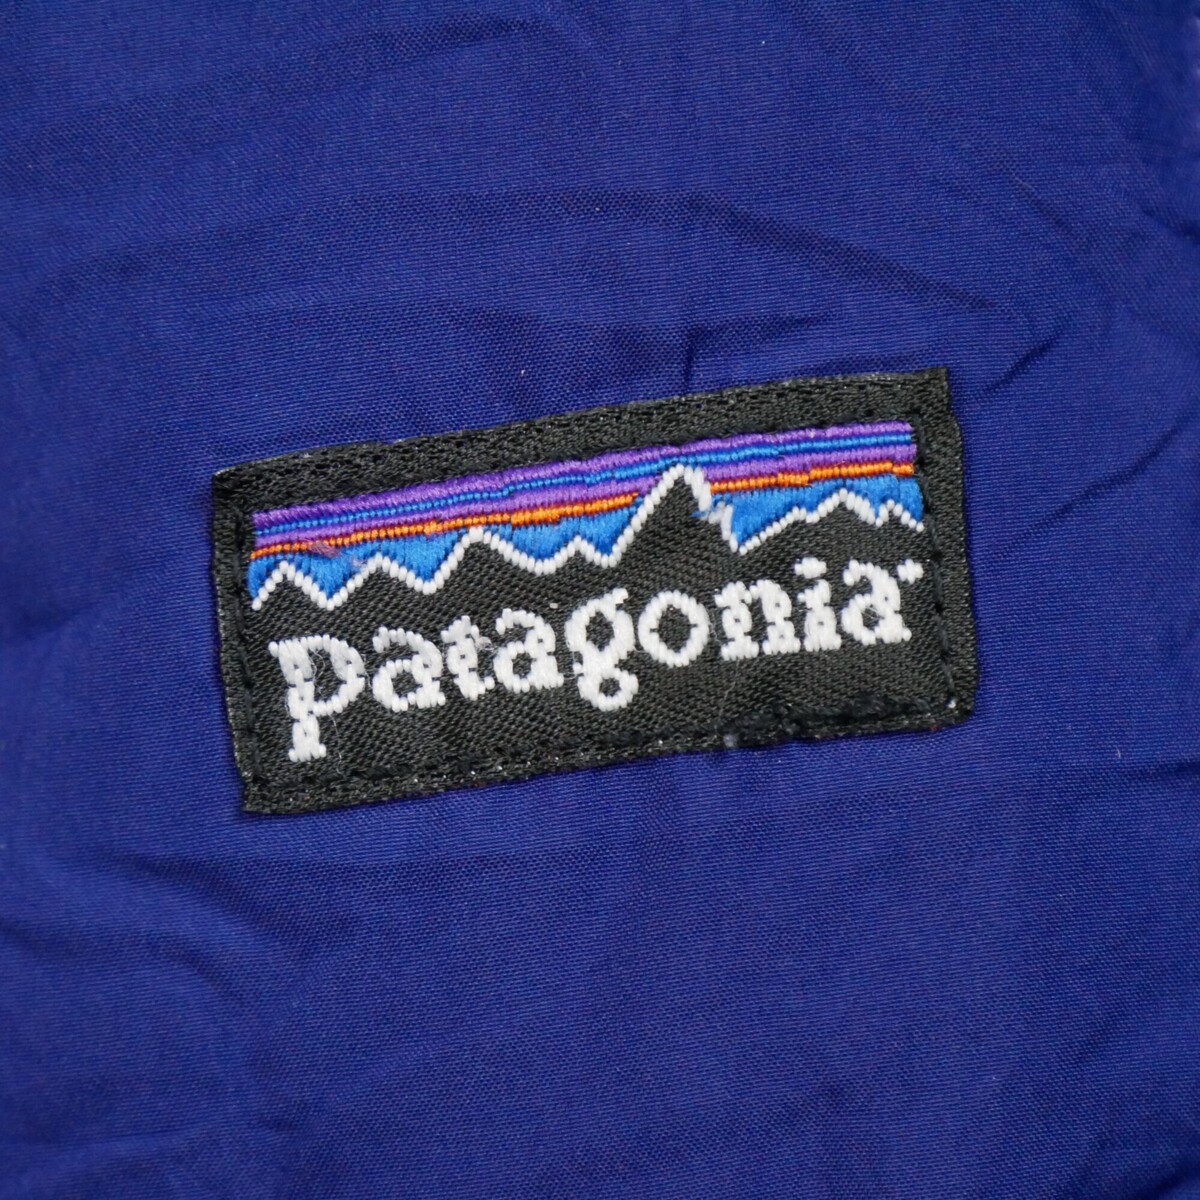 Patagonia Autres Doudoune koeautZL